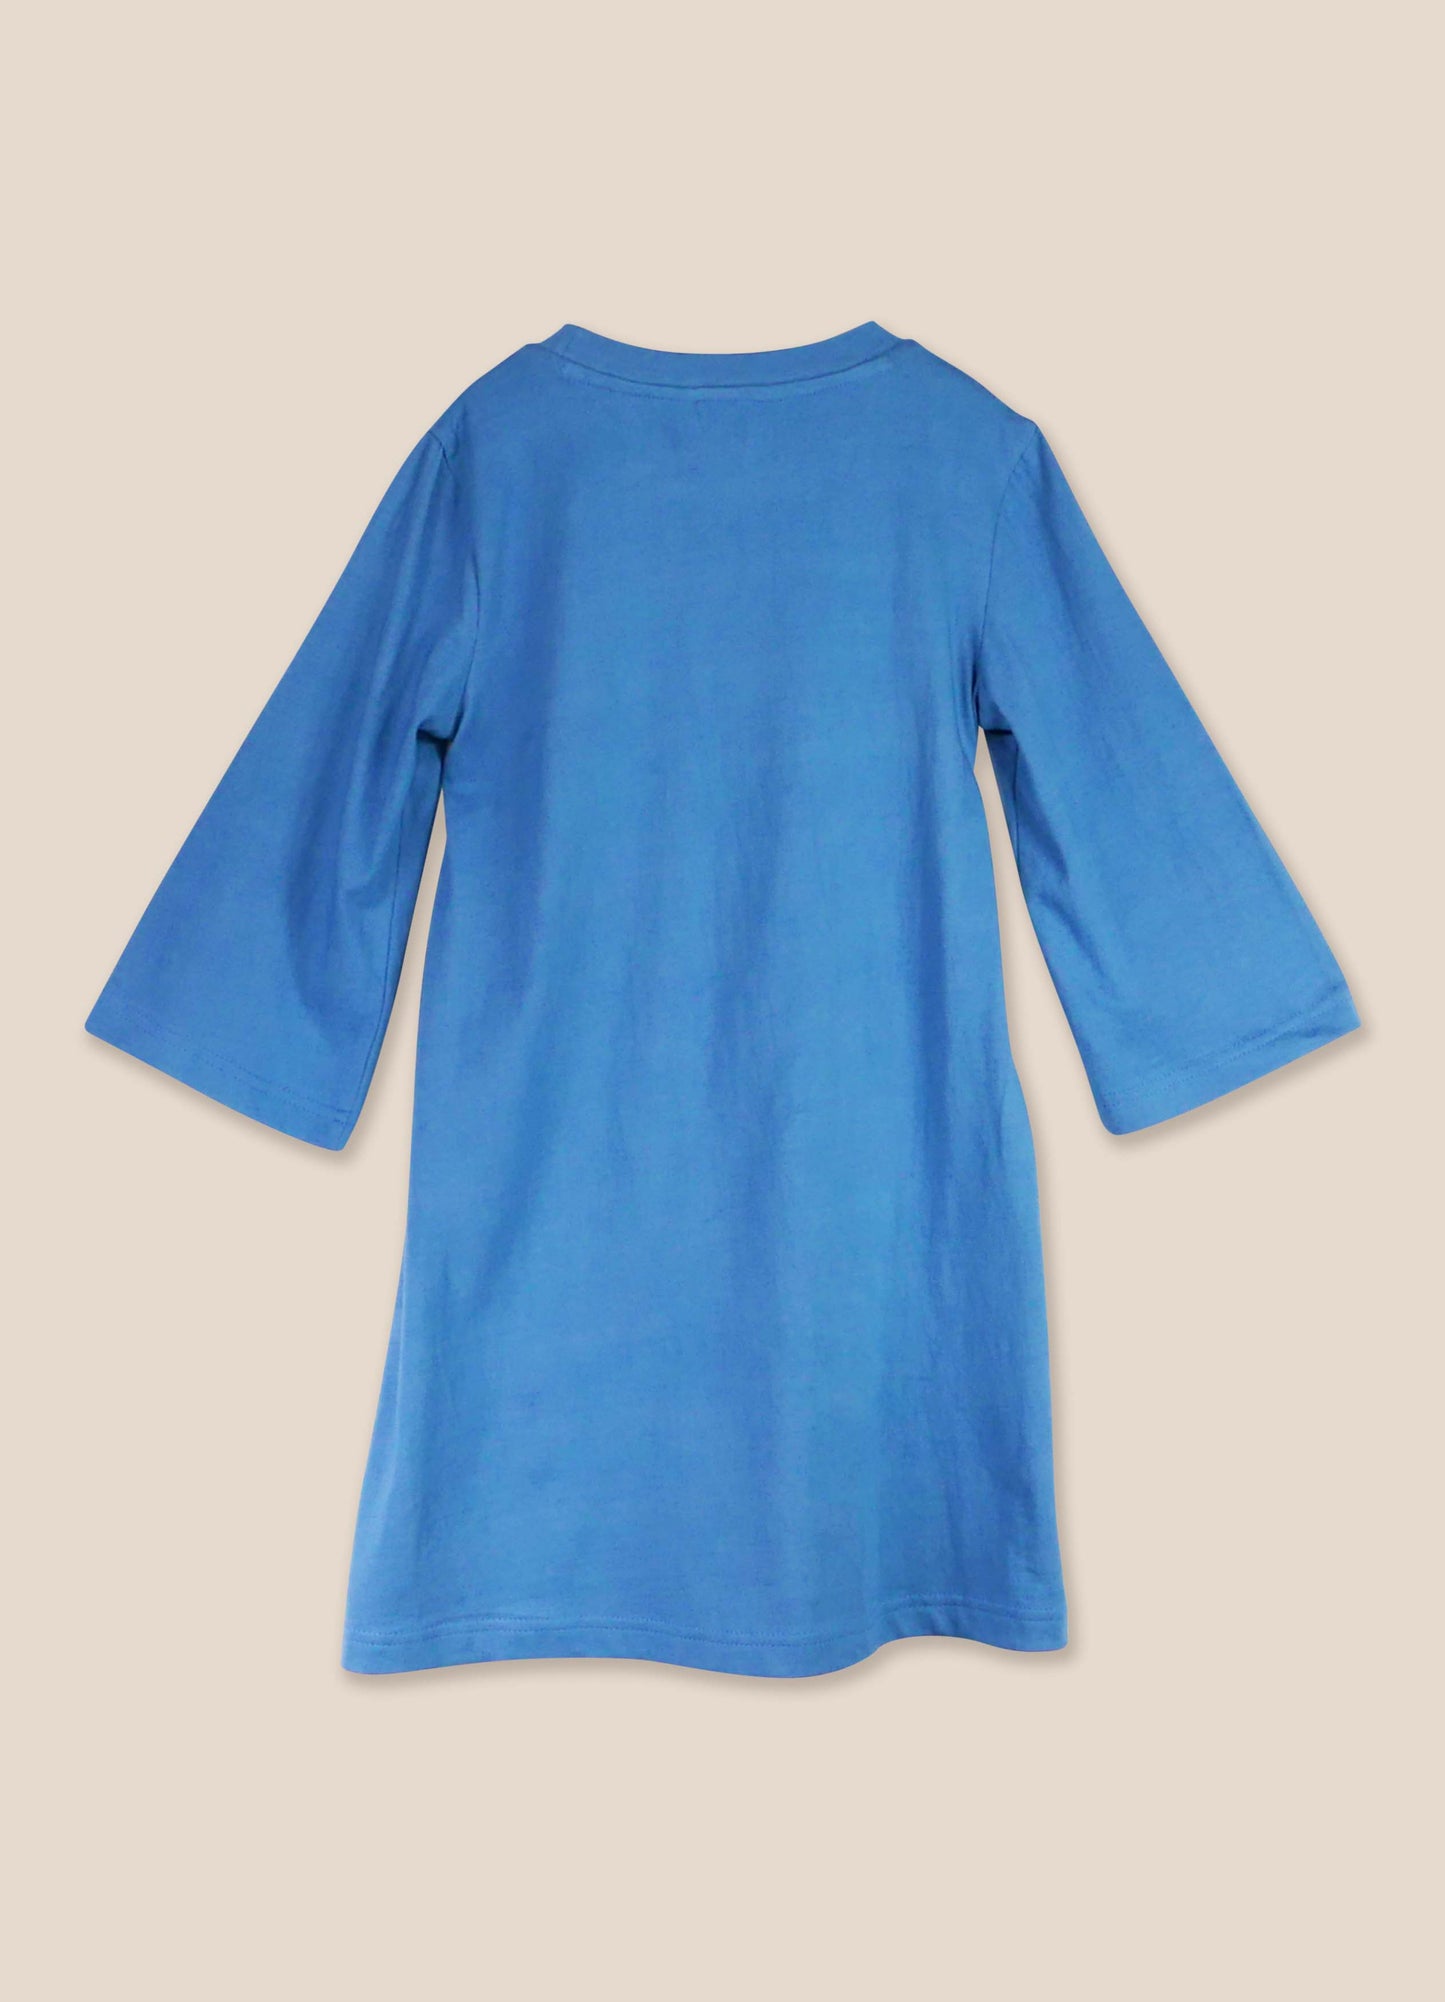 Dress No. 43 Provincial Blue